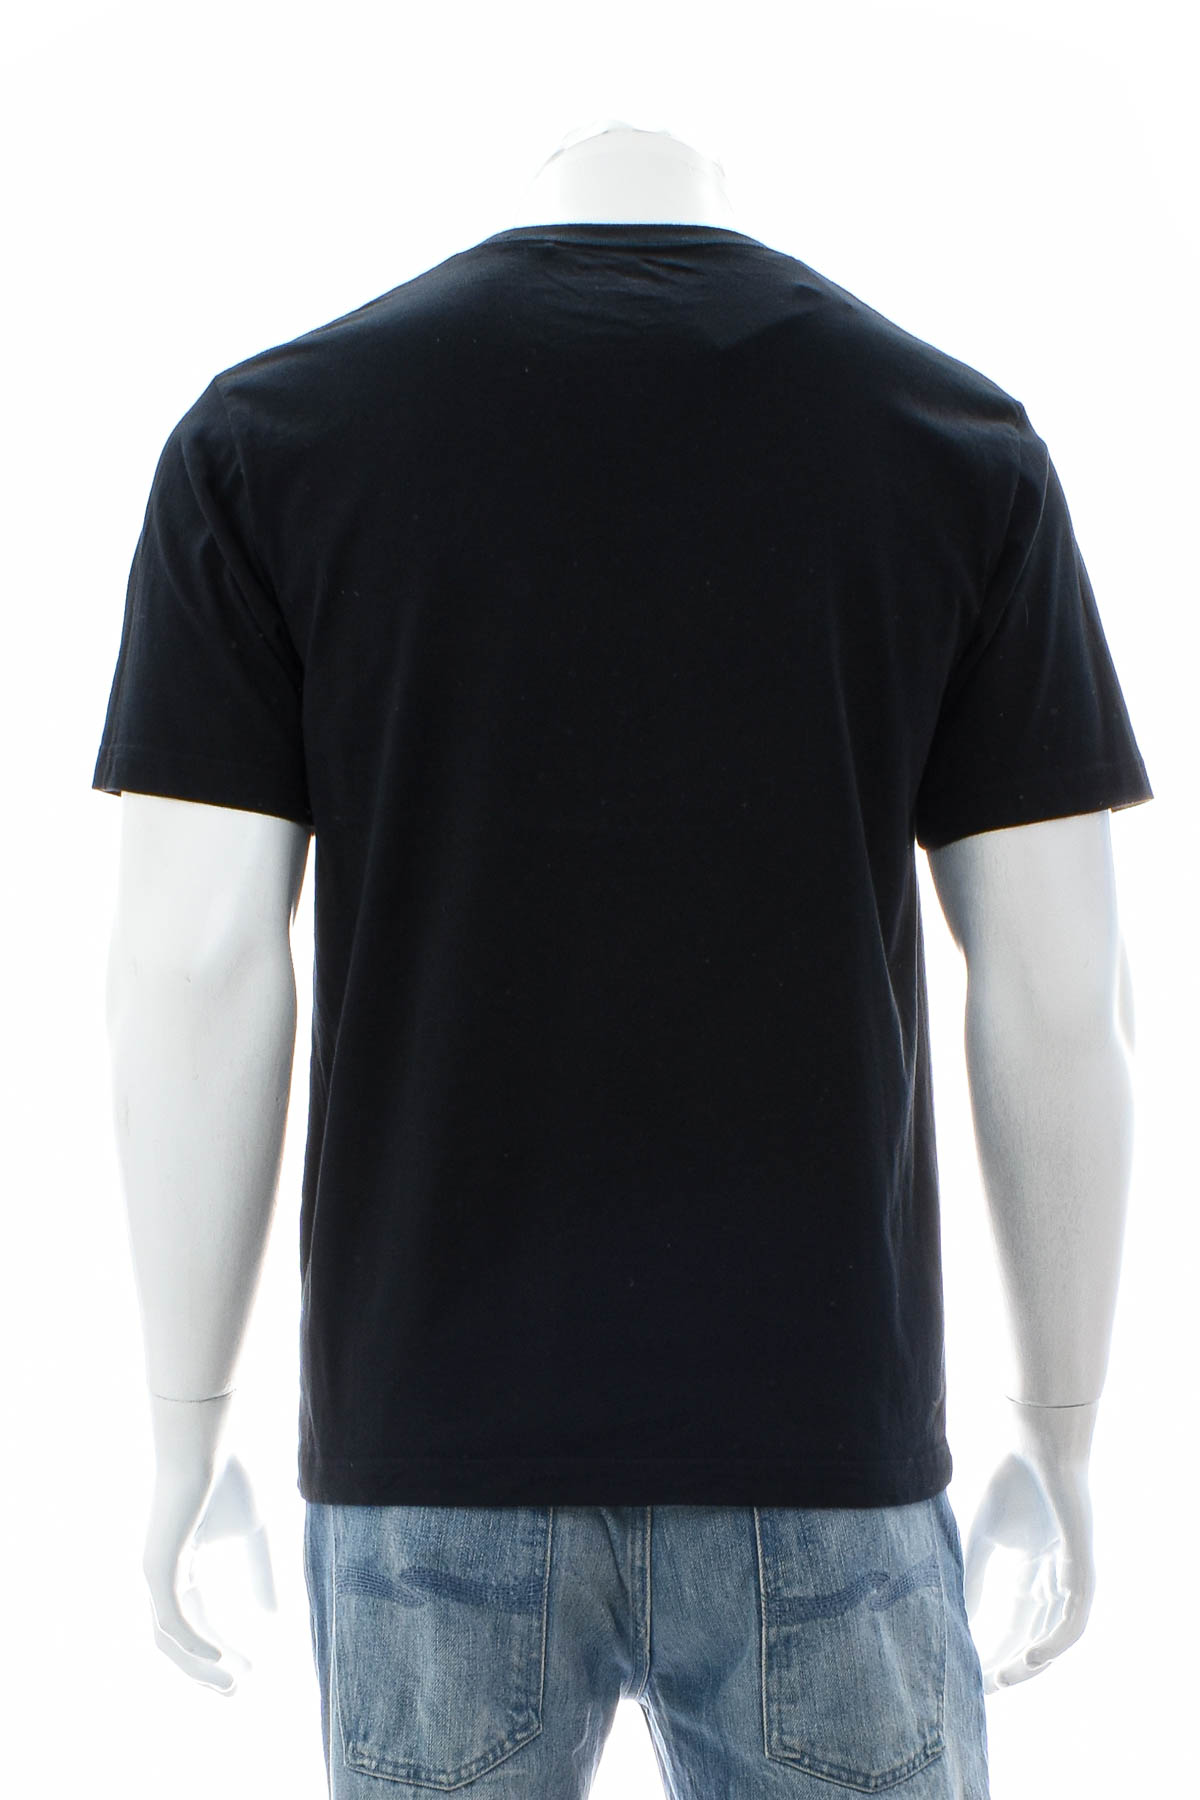 Αντρική μπλούζα - UNIQLO - 1